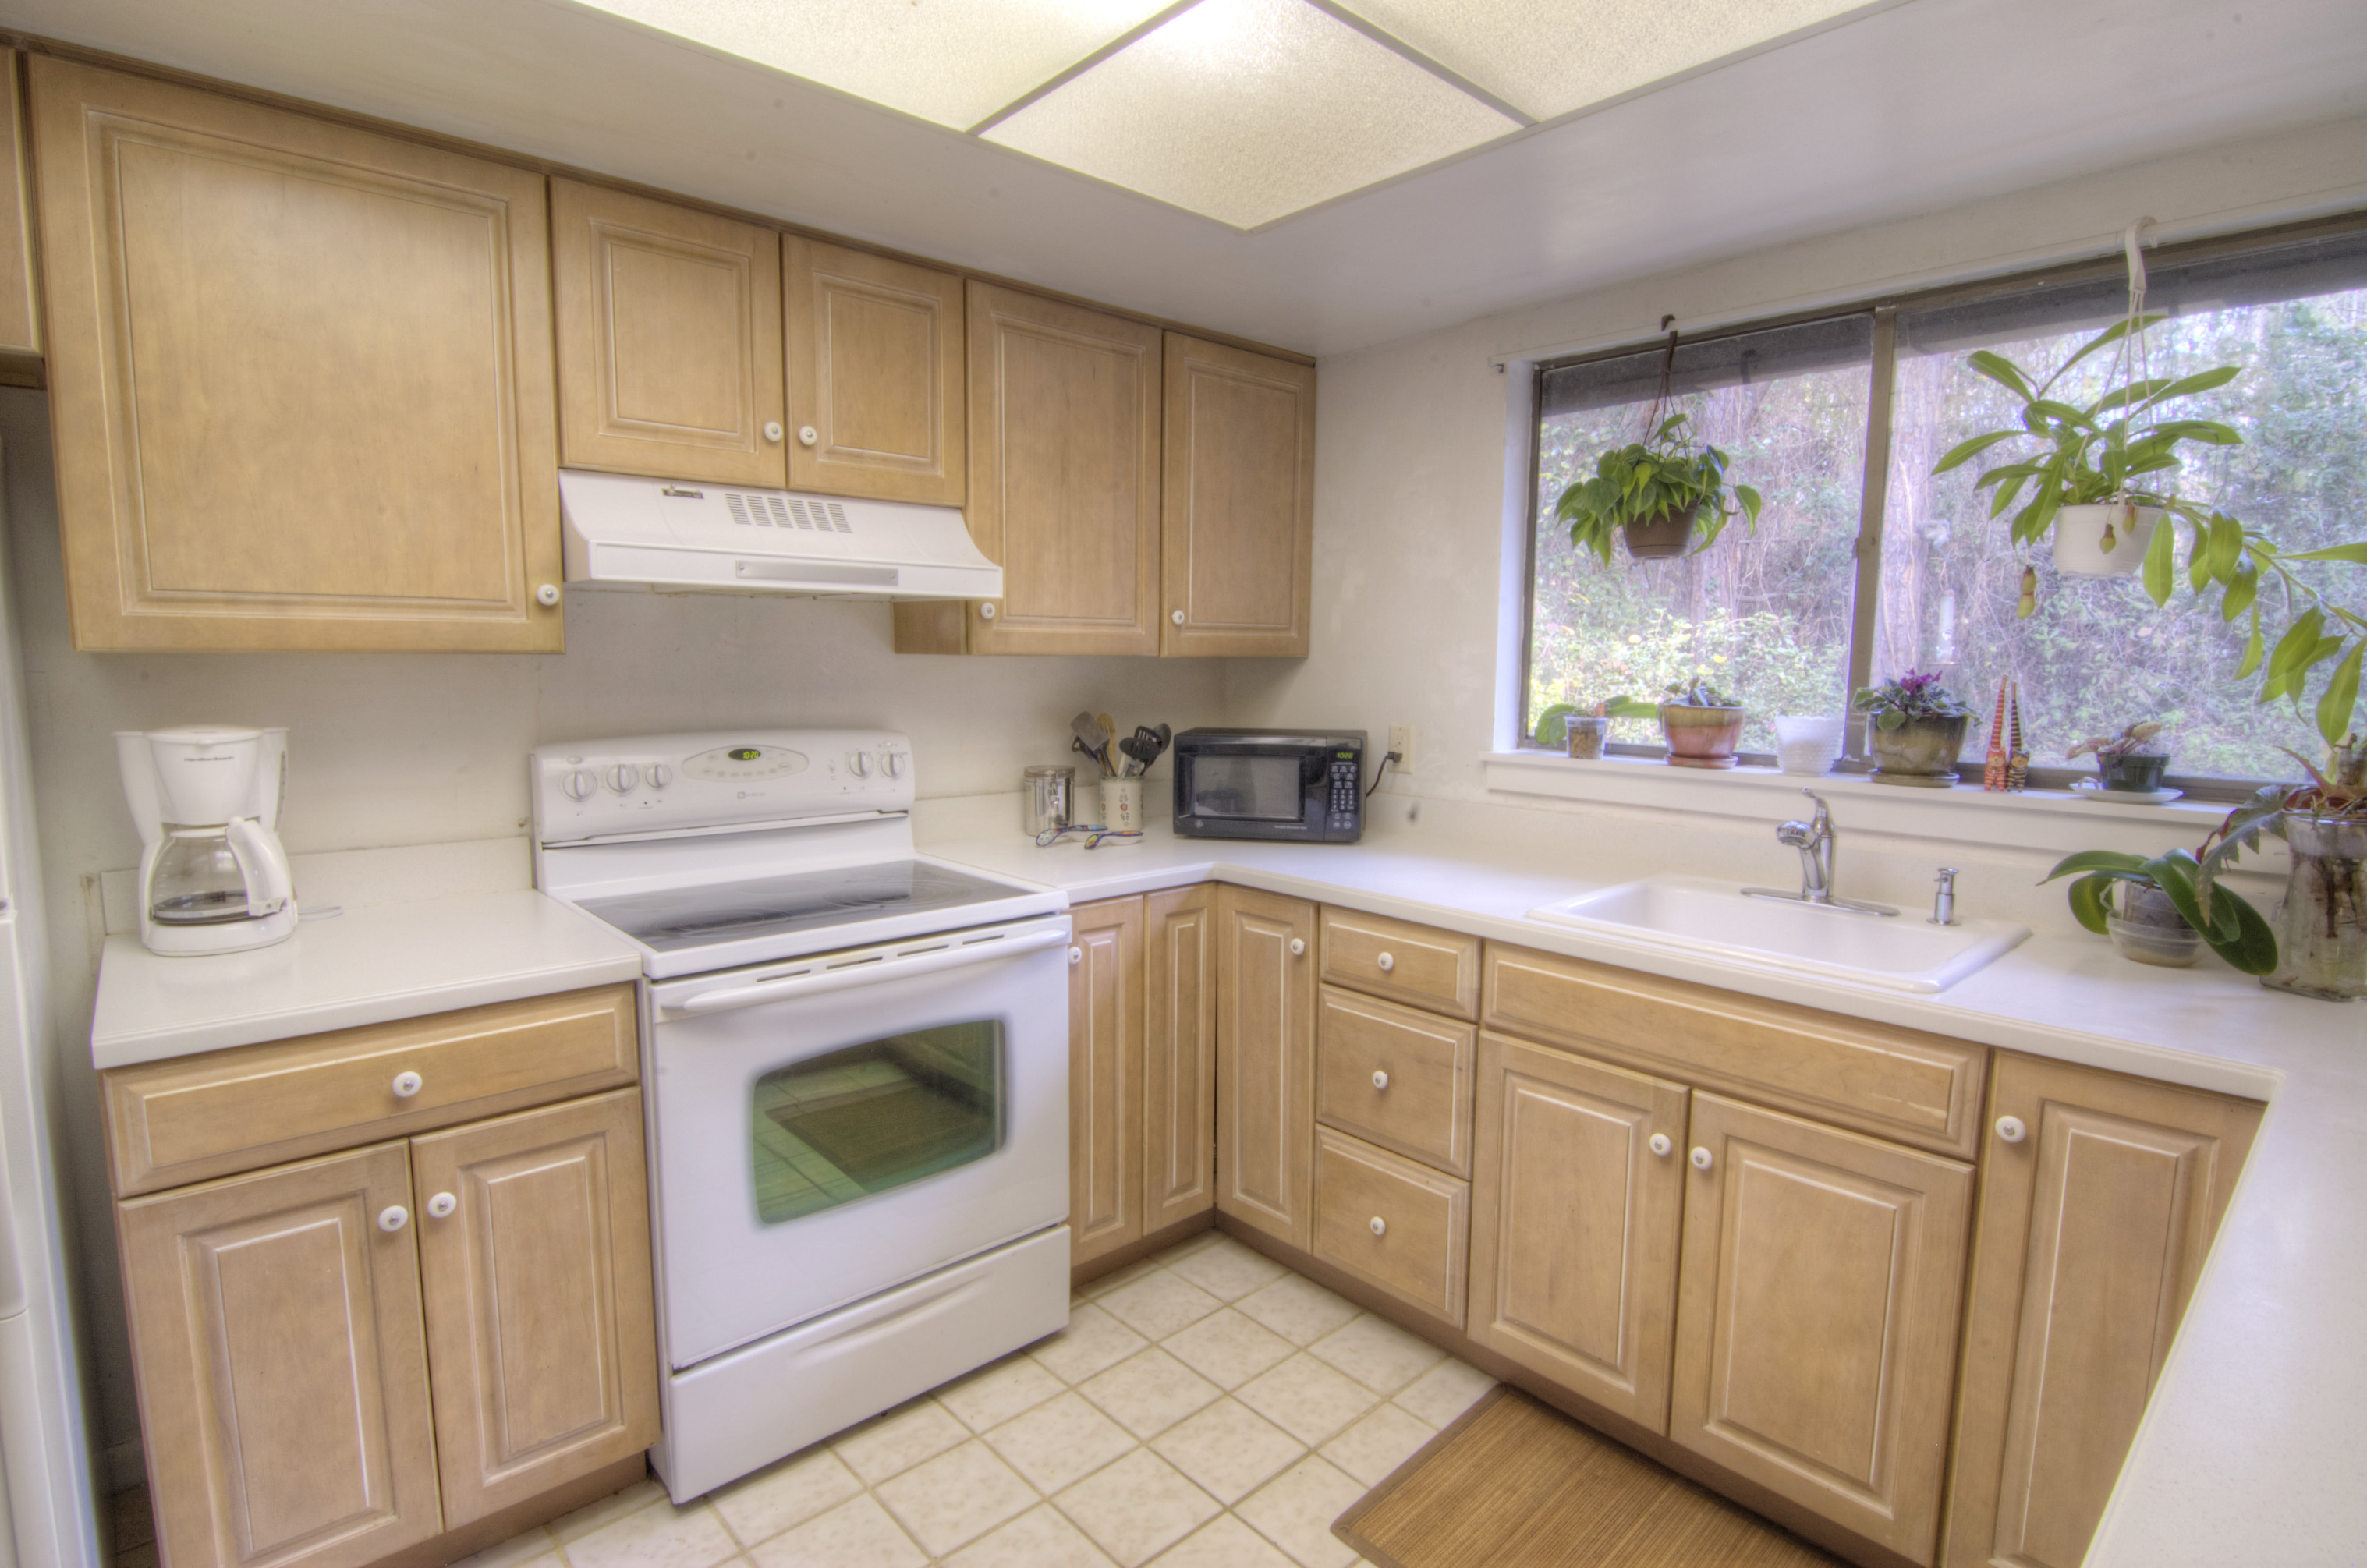 kitchen01 MLS 348673 - Gainesvilleian - Gainesville FL Real Estate